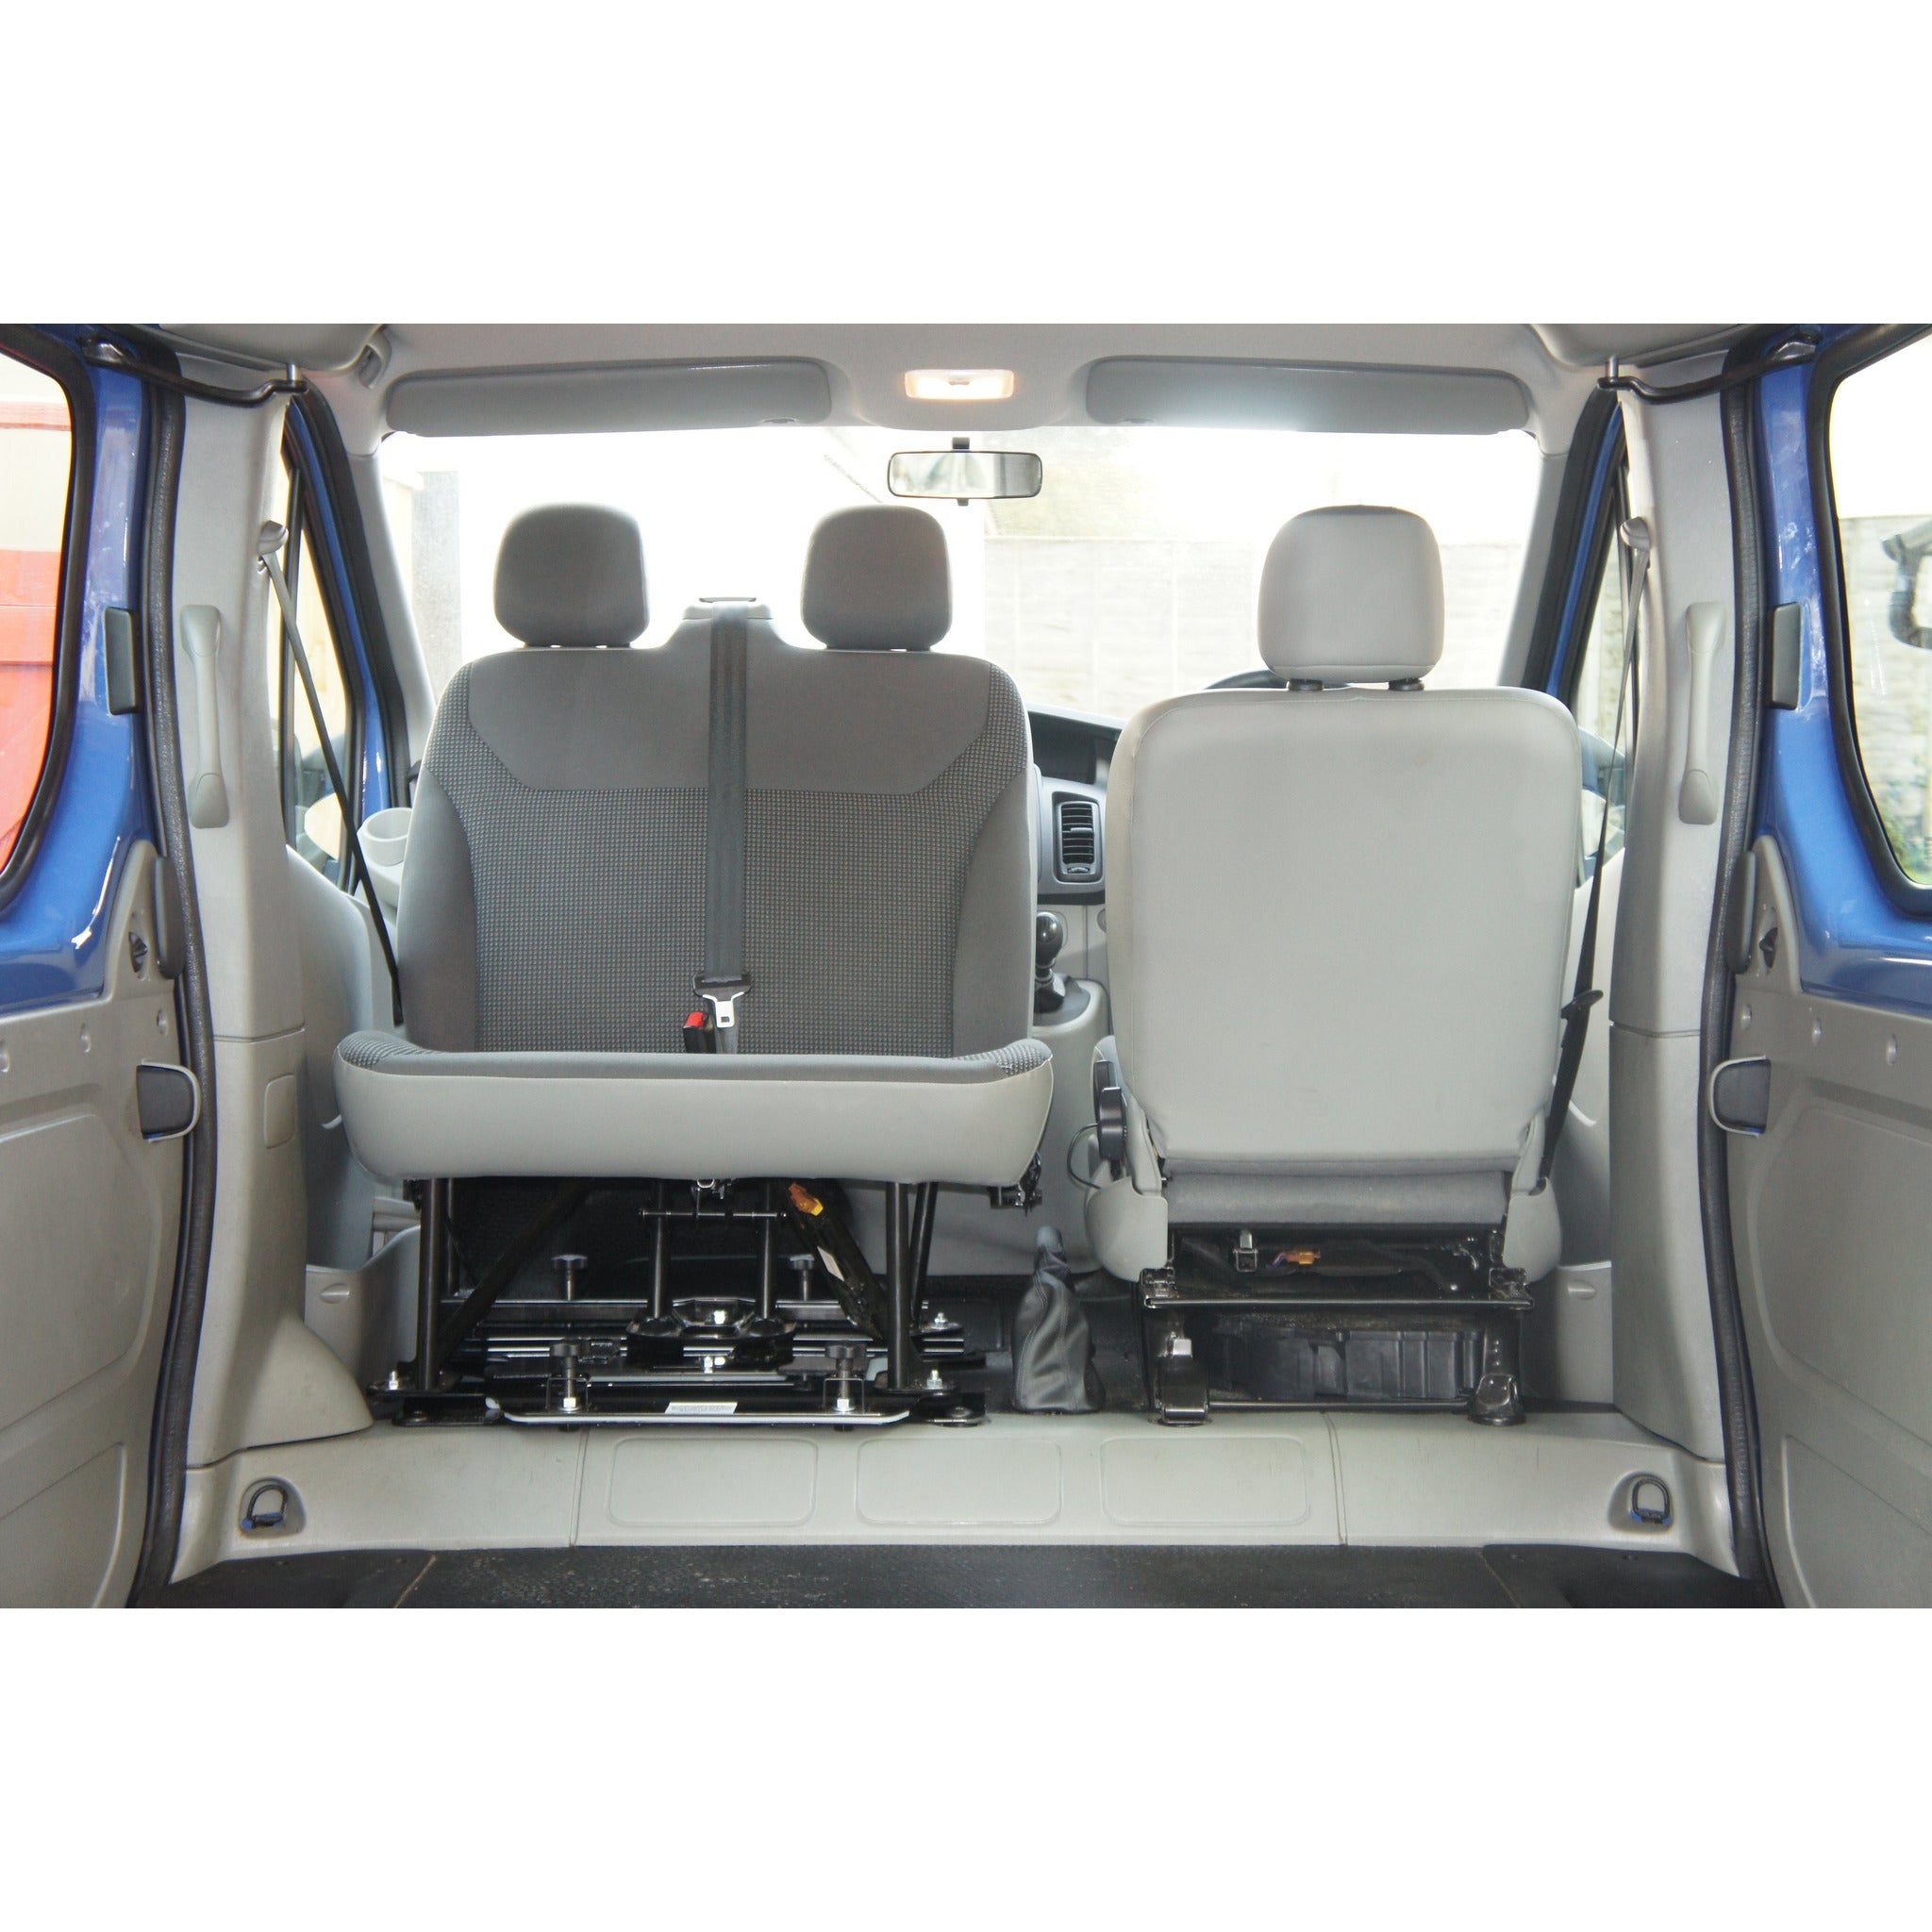 Kiravans X82 Vauxhall Vivaro 3rd Gen 2014-2018 Double Passenger Seat Swivel (Right Hand Drive) Designed by Kiravans 